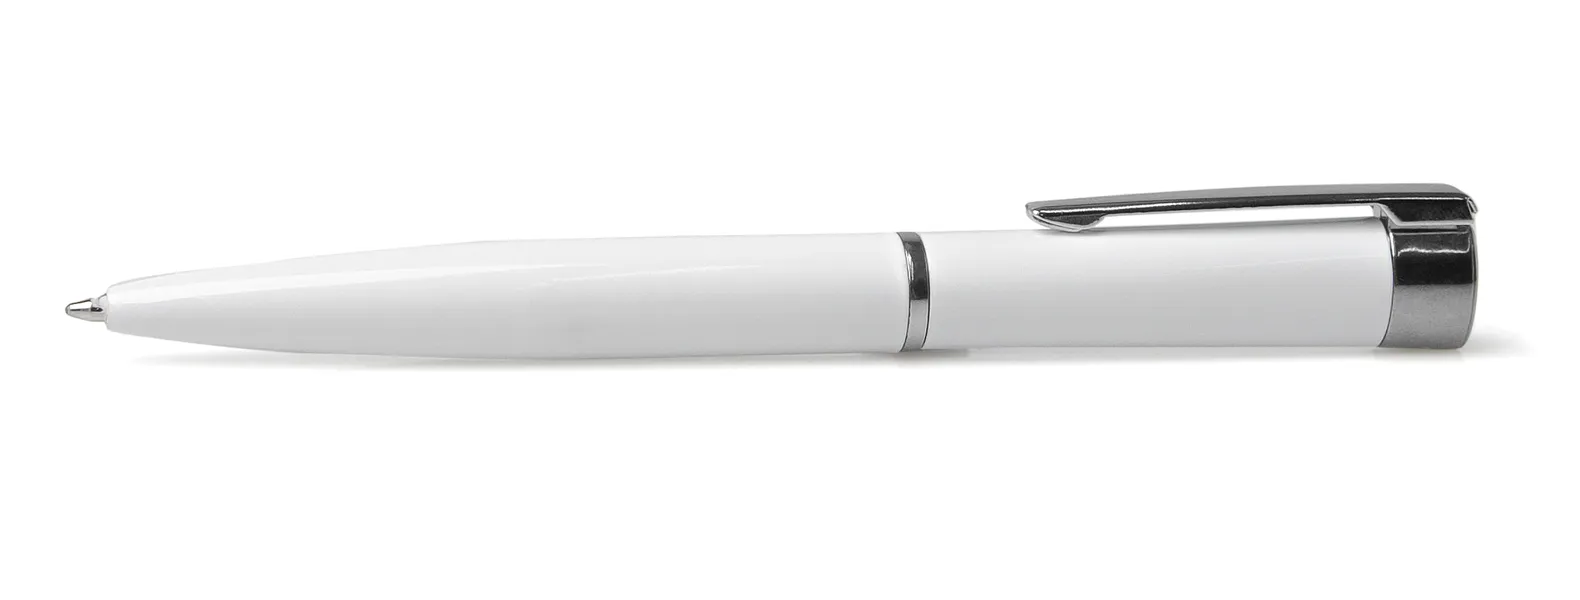 Caneta confeccionada em alumínio branco com detalhes cromado. Carga esferográfica azul, acionada com um giro no corpo da caneta.